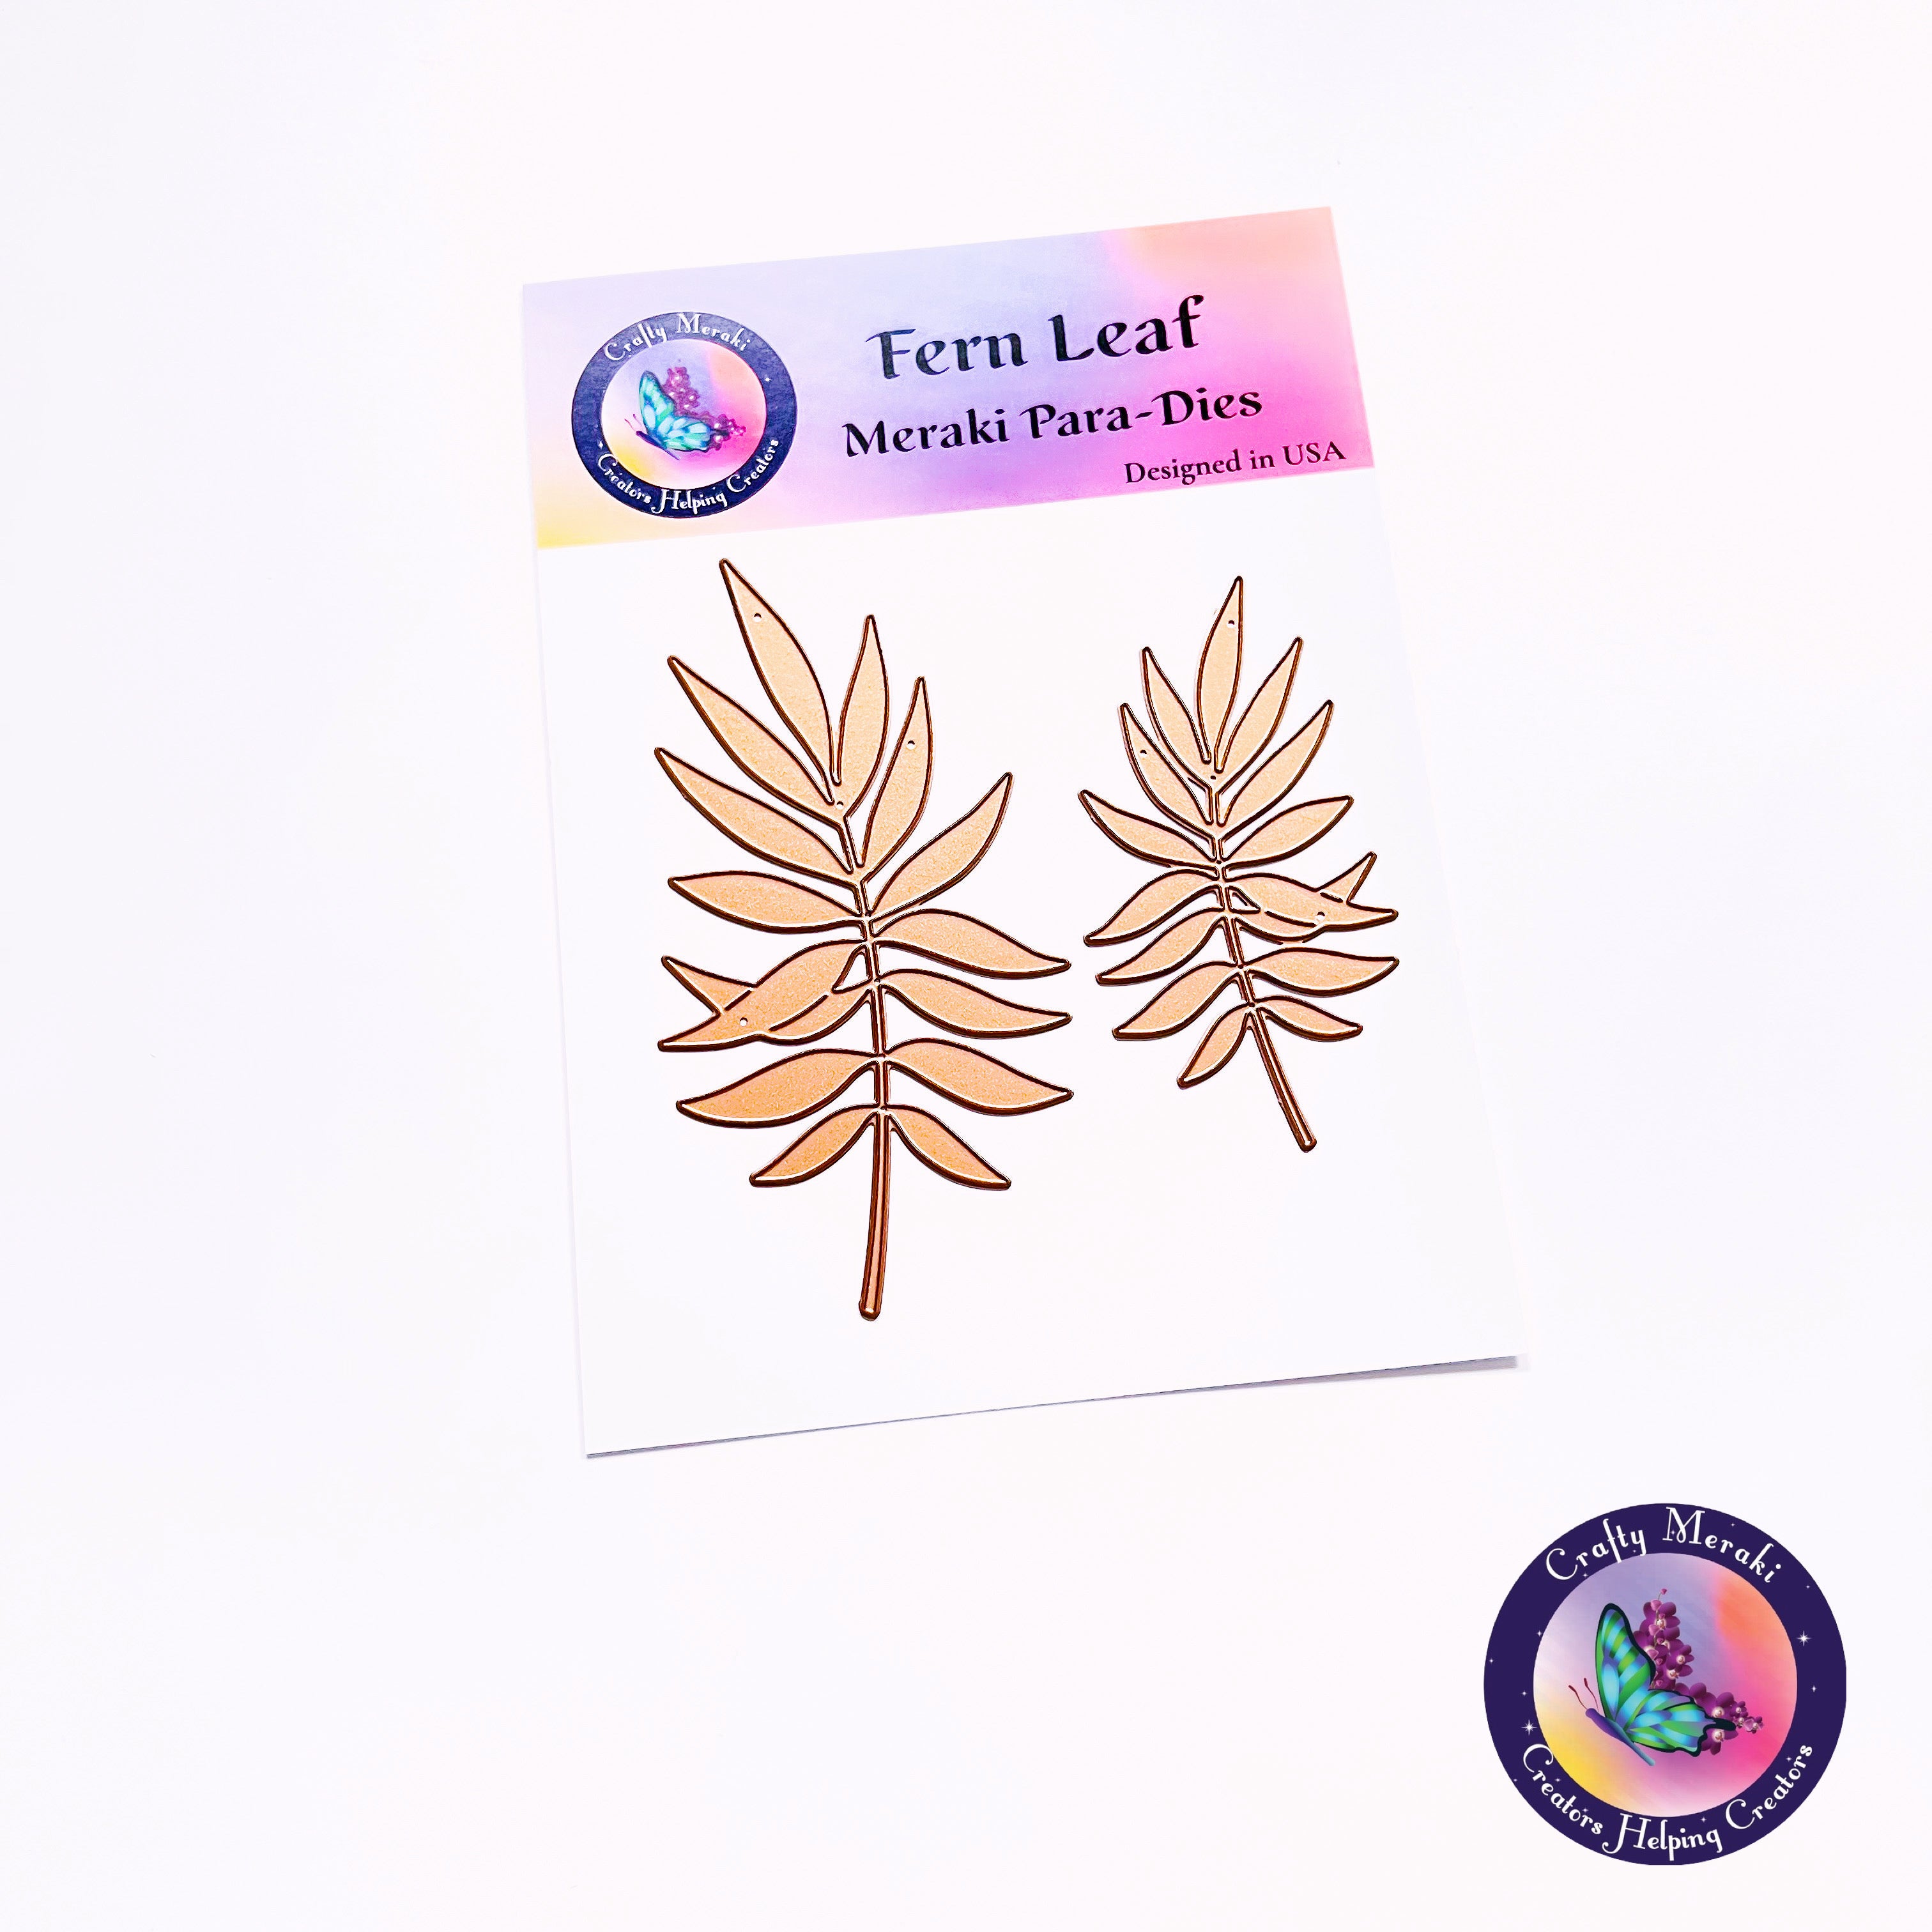 Fern Leaf Meraki Para-Dies - Crafty Meraki